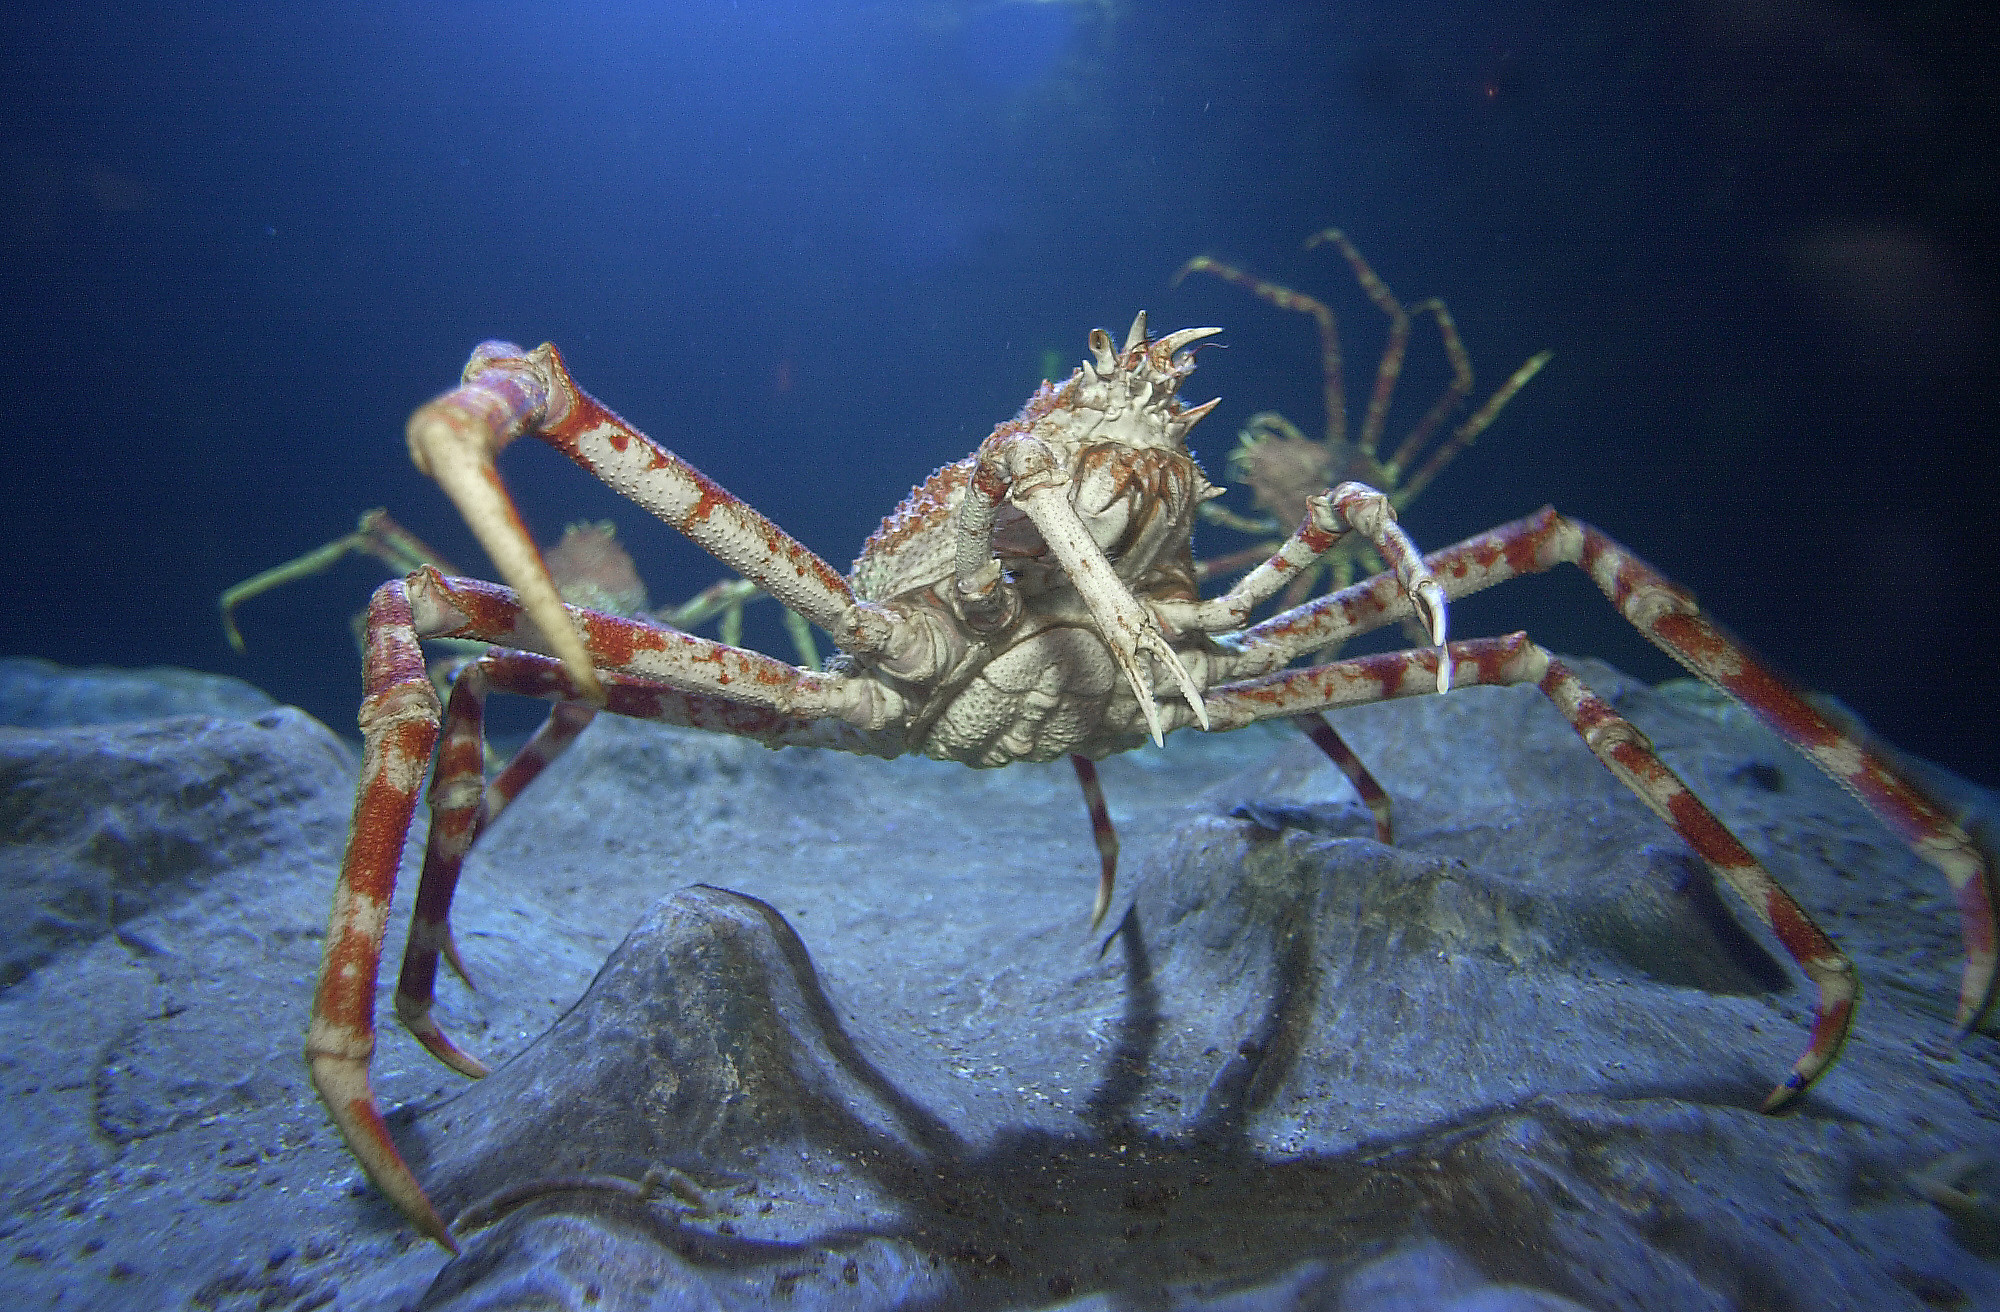 Japanese Spider Crab at SEA LIFE